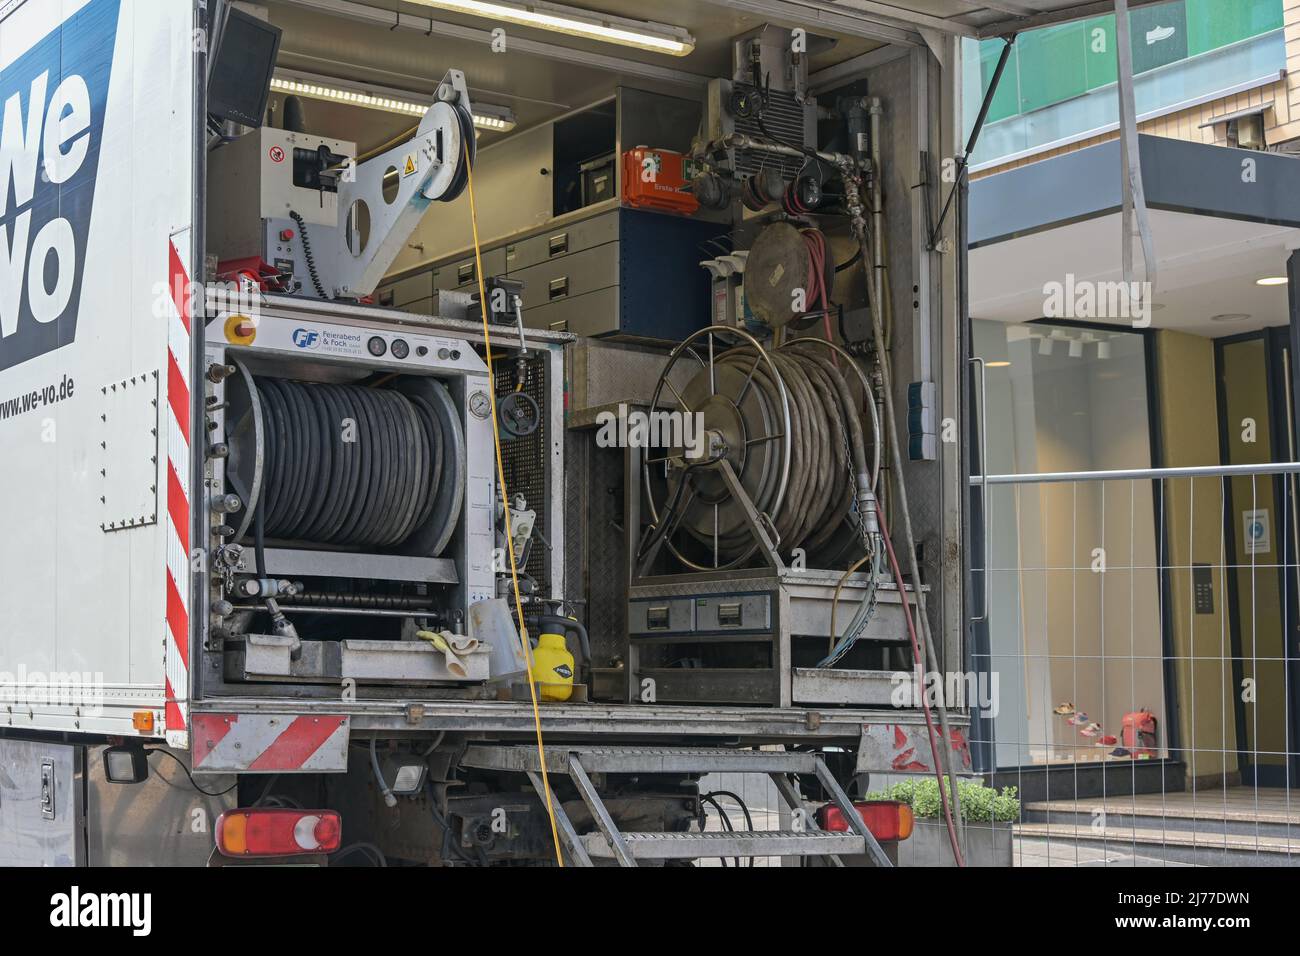 Lubeck, Germania, 4 maggio 2022: Autocarro con attrezzature per lavori fognari come tubi flessibili, unità di pompaggio pneumatica, cavi e macchine, tecnologia professionale Foto Stock